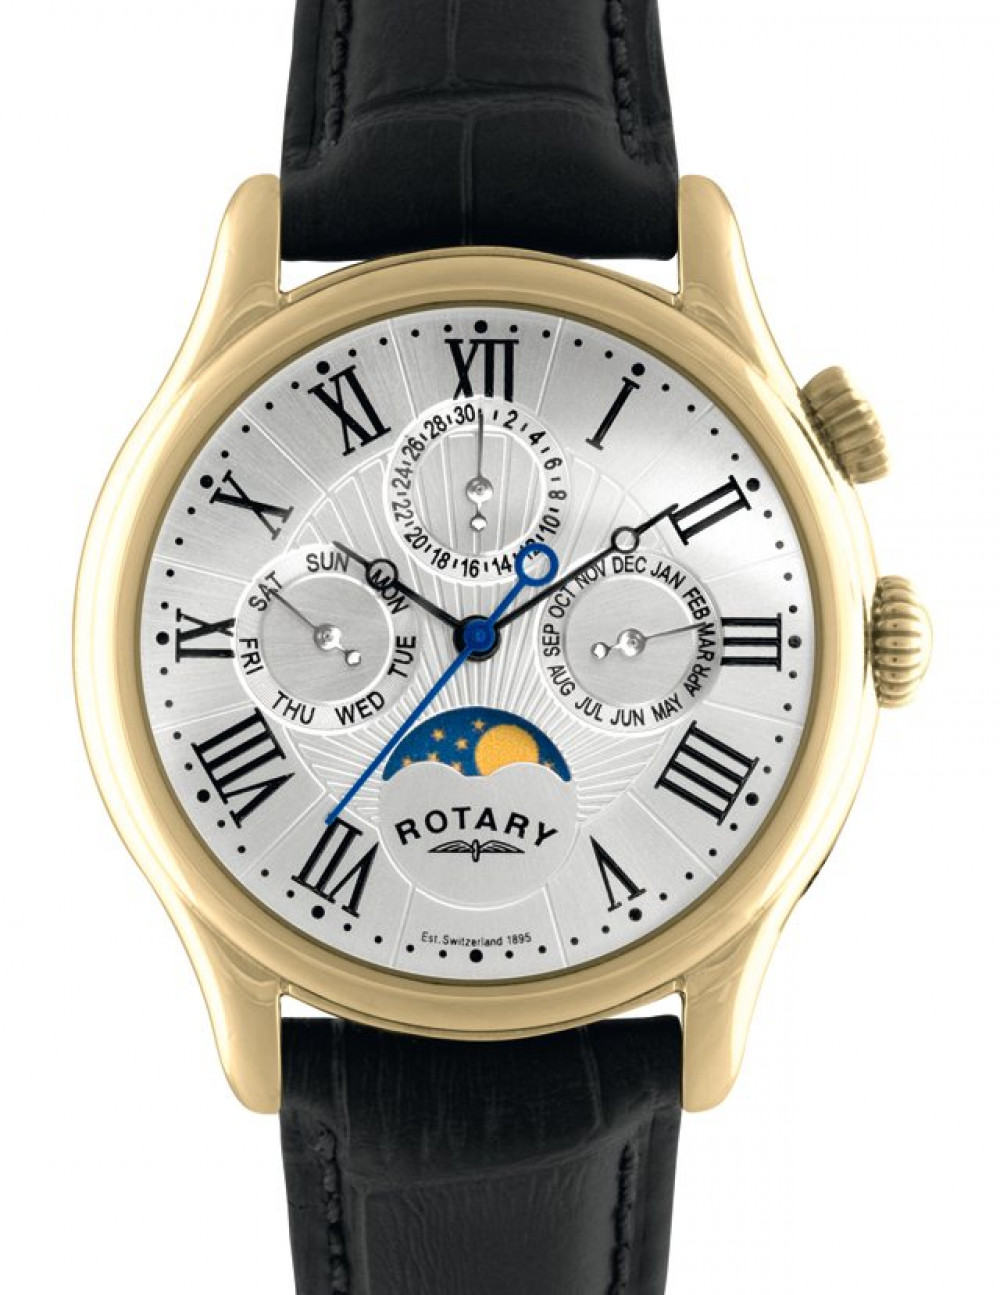 Zegarek firmy Rotary, model Timepieces